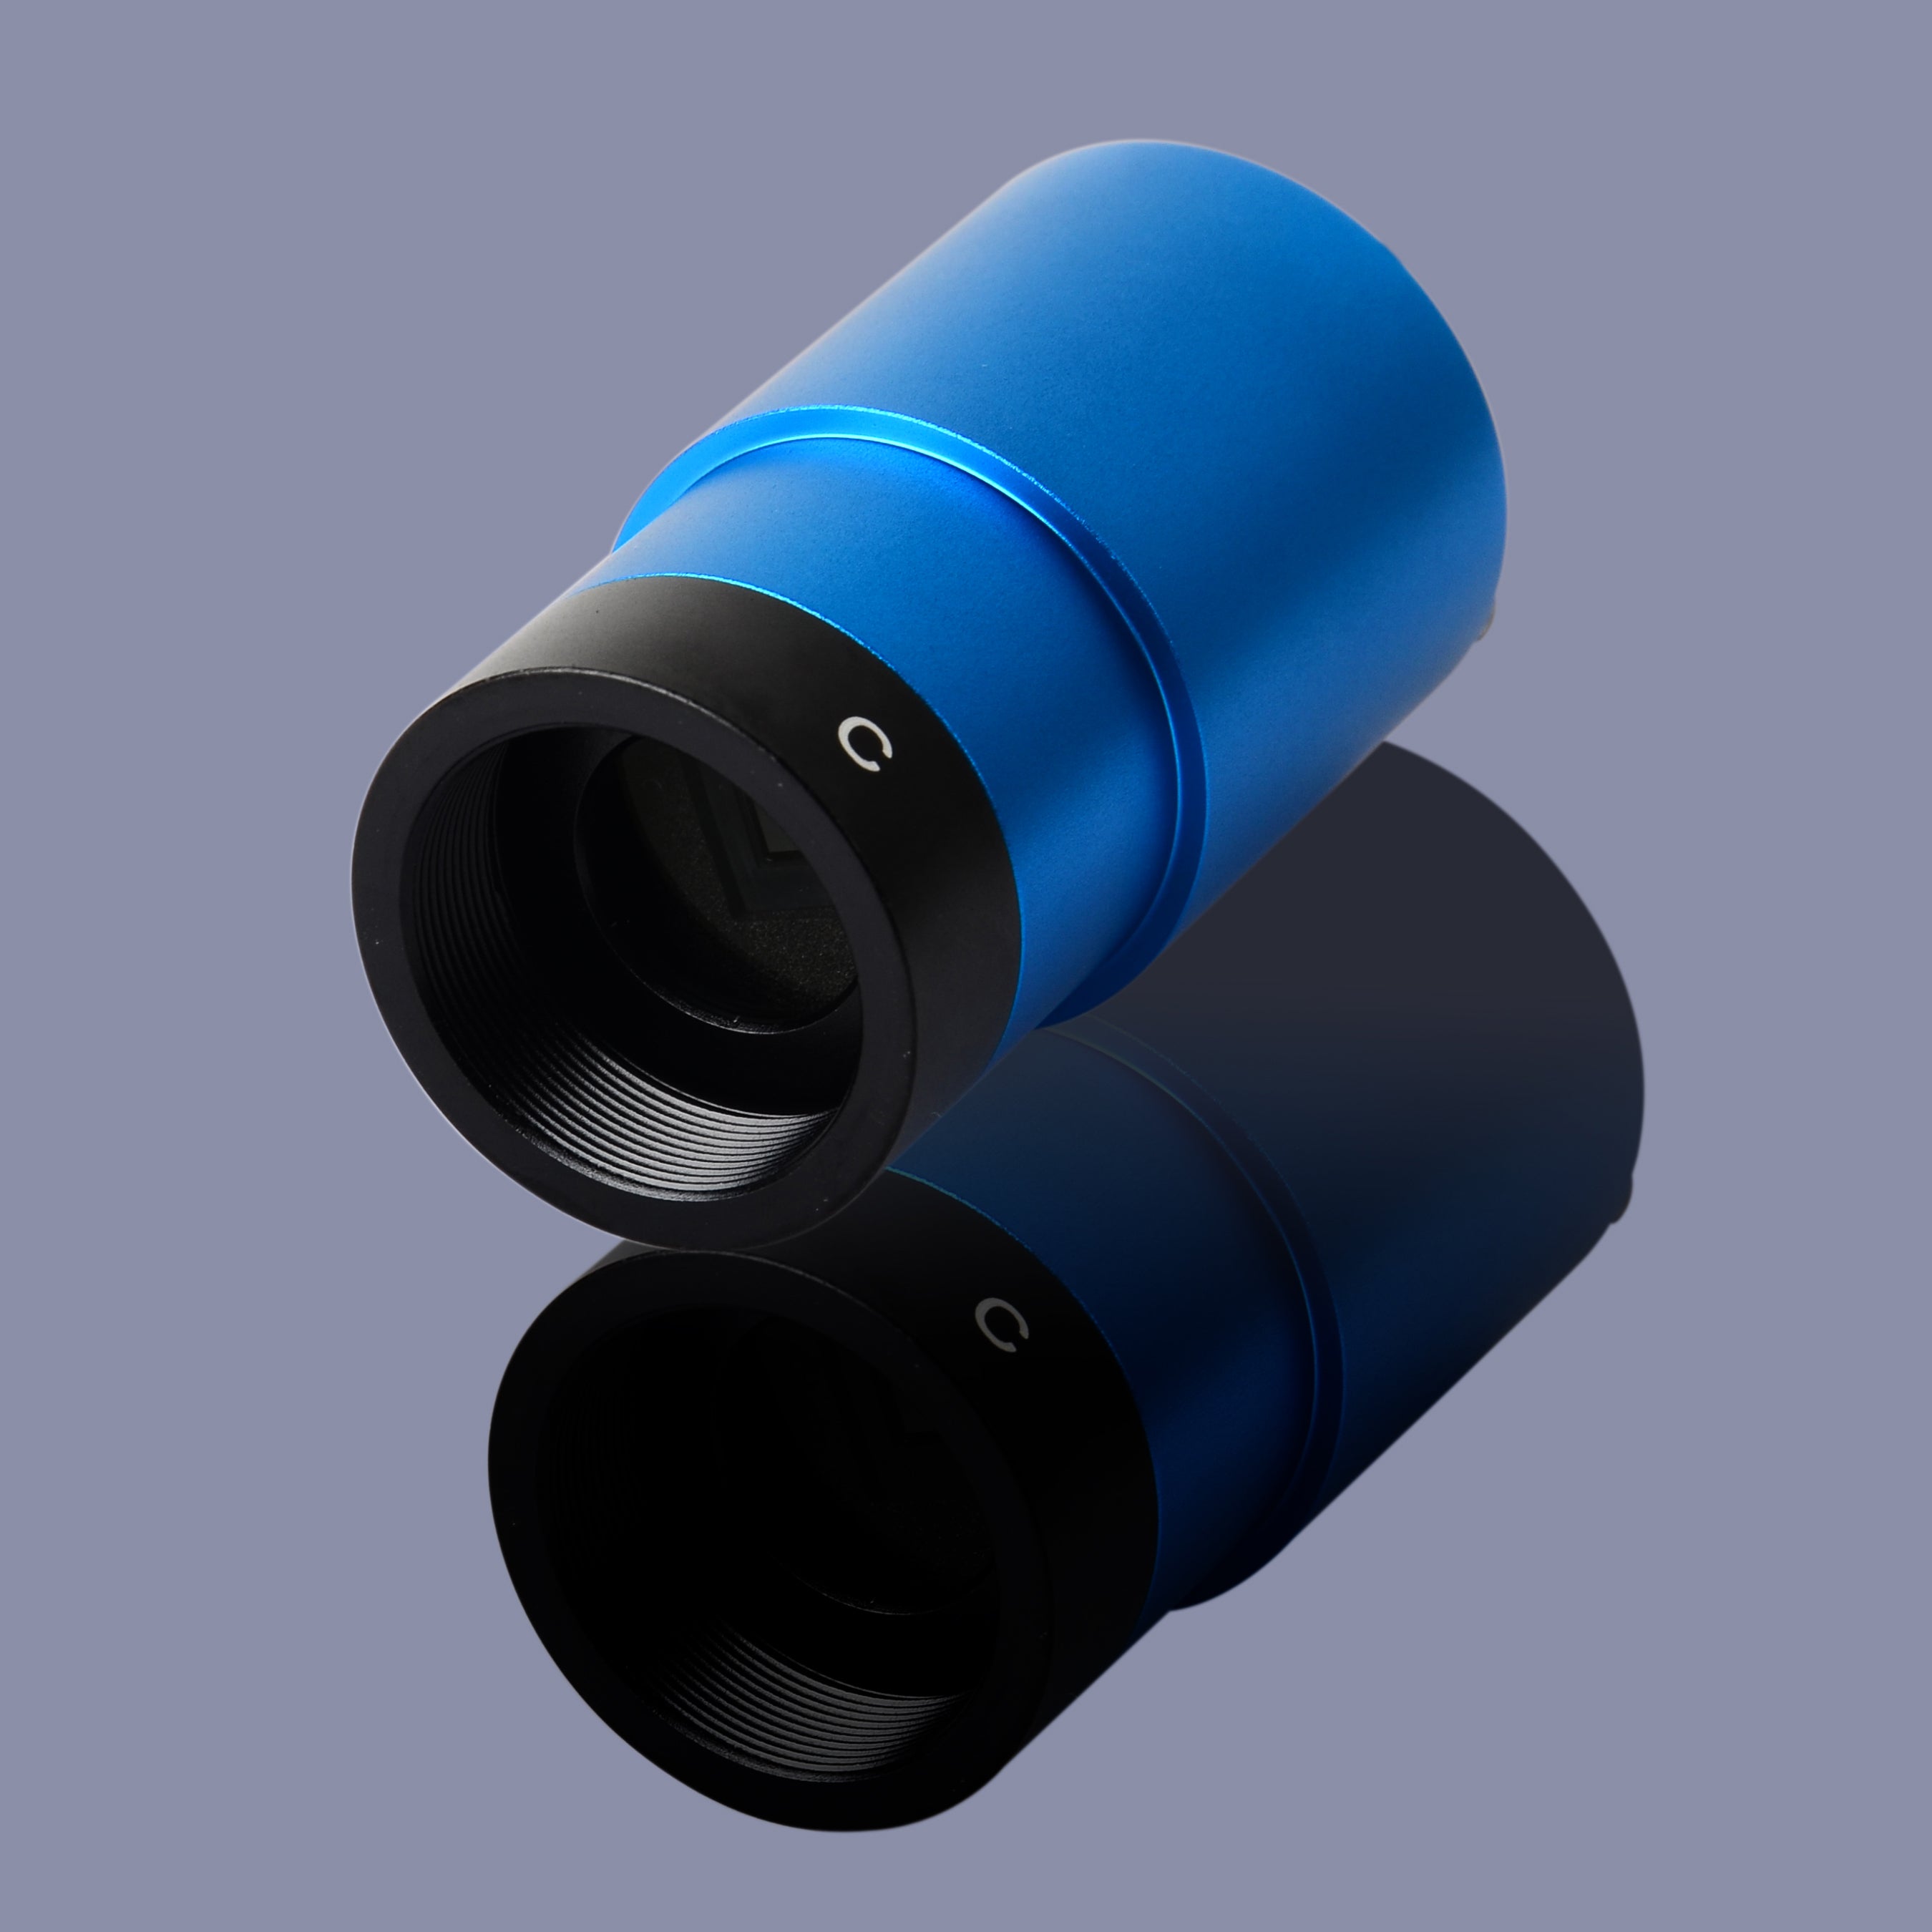 Serie BSTAR-DU USB2.0 CMOS Sensor 1.25 "Cámara de color de astrofotografía guía